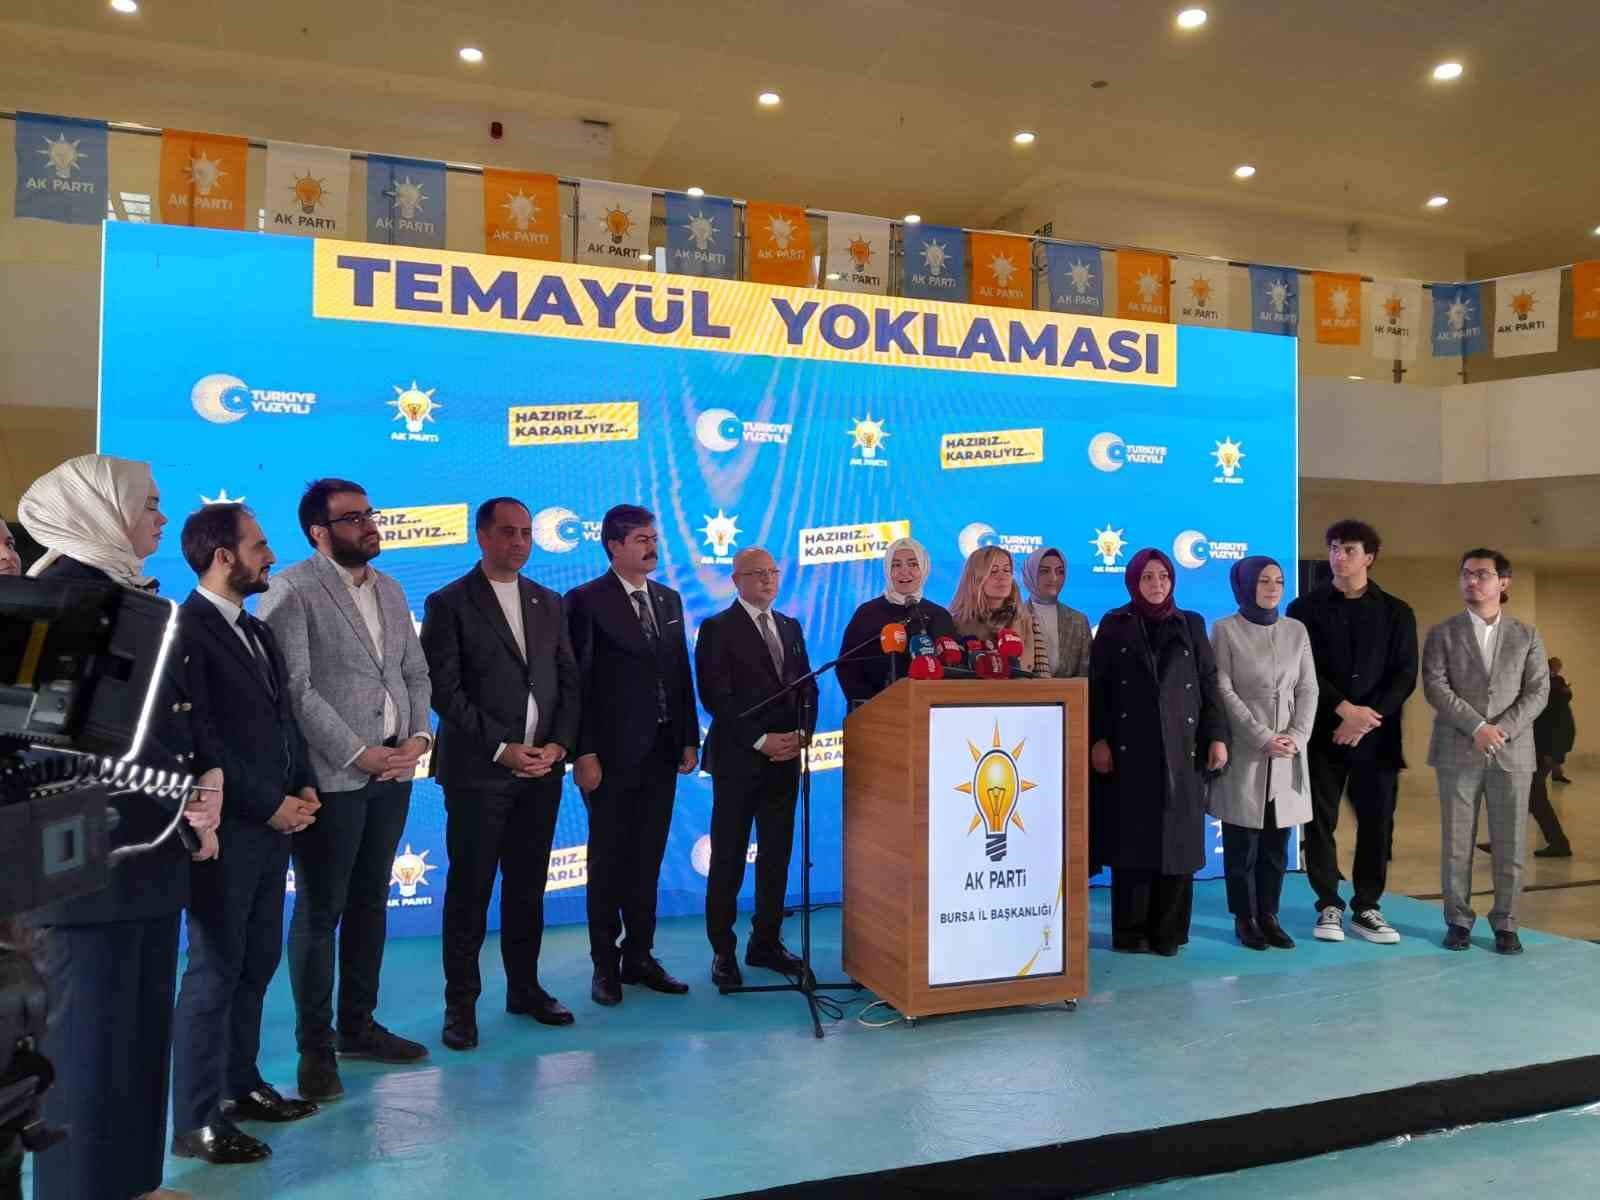 AK Parti Bursa'da temayül yoklaması İhlas Haber Ajansı